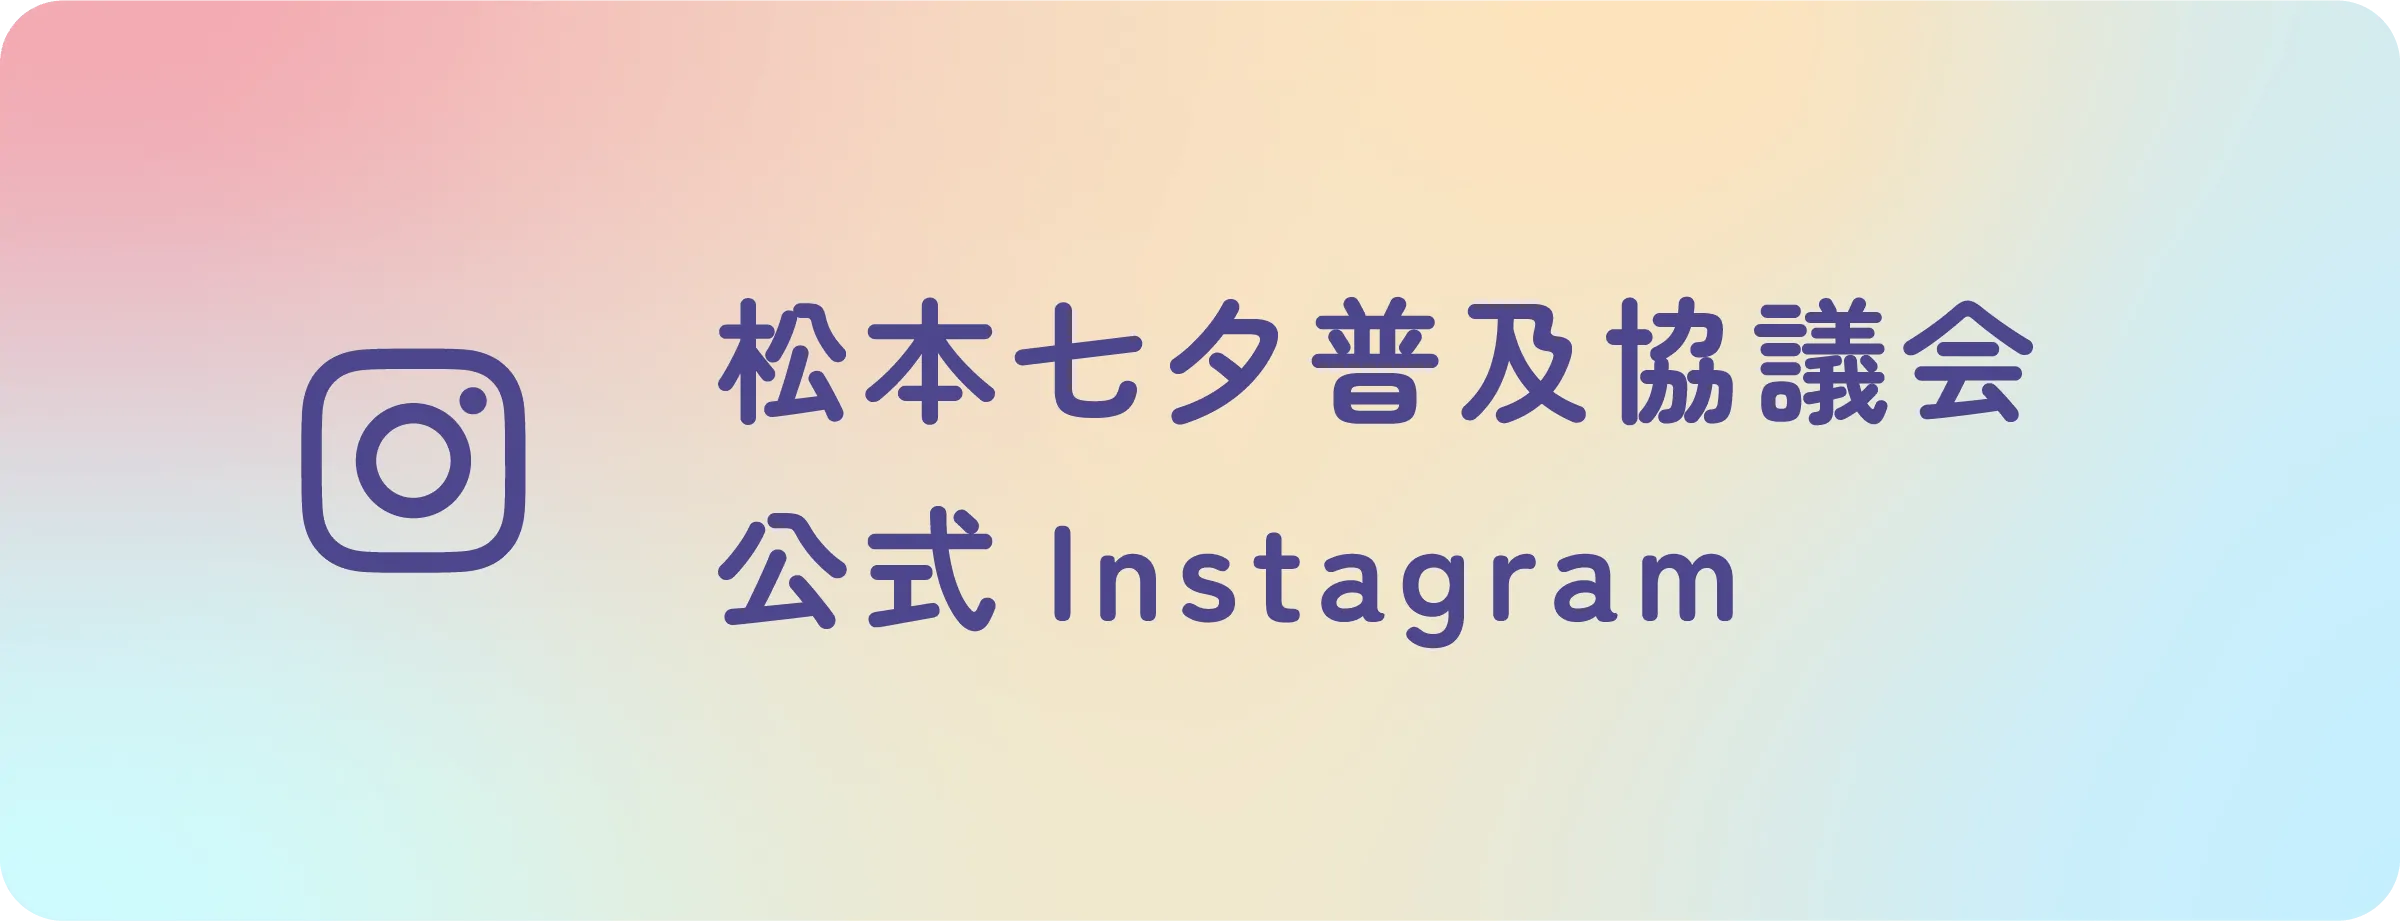 松本普及協議会 公式Instagram